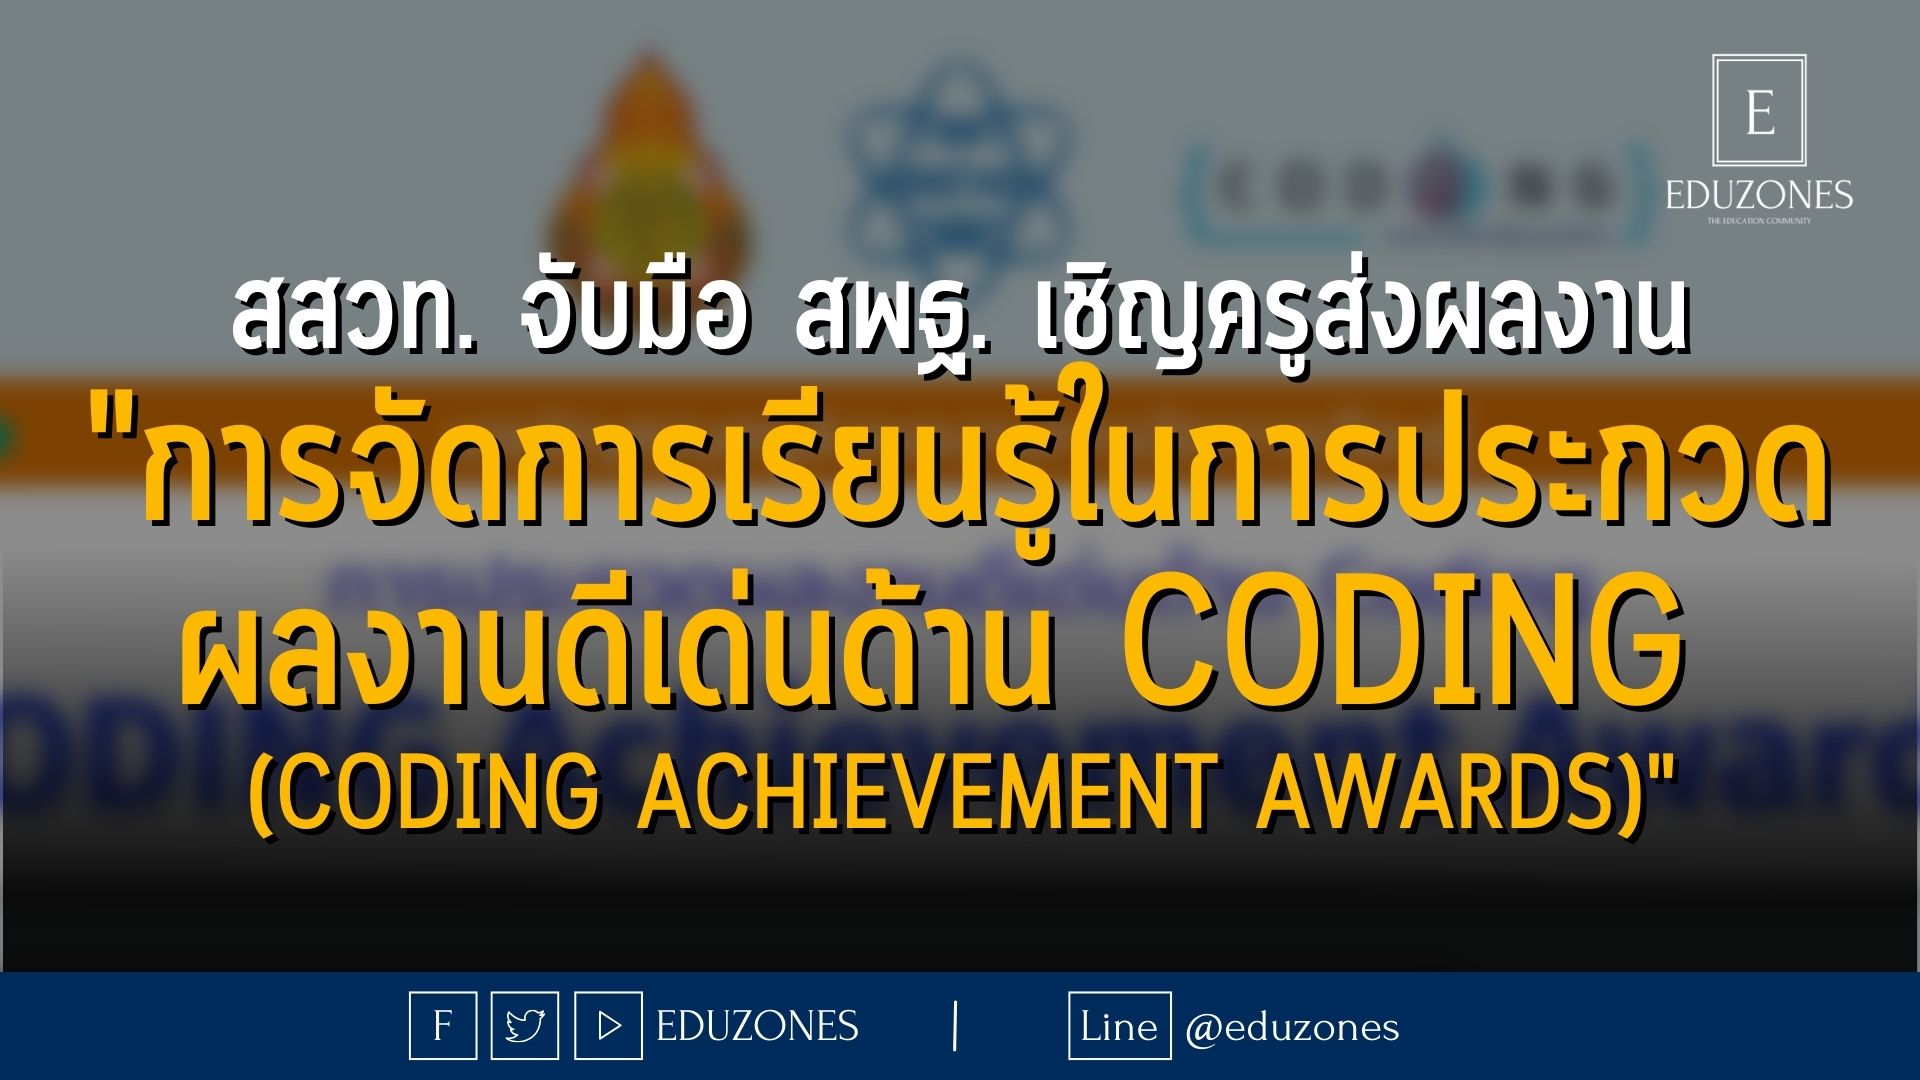 สสวท. จับมือ สพฐ. เชิญครูร่วมส่งผลงานการจัดการเรียนรู้ในการประกวดผลงานดีเด่นด้าน Coding (Coding Achievement Awards)  —  หมดเขต 15 กรกฎาคม 2565